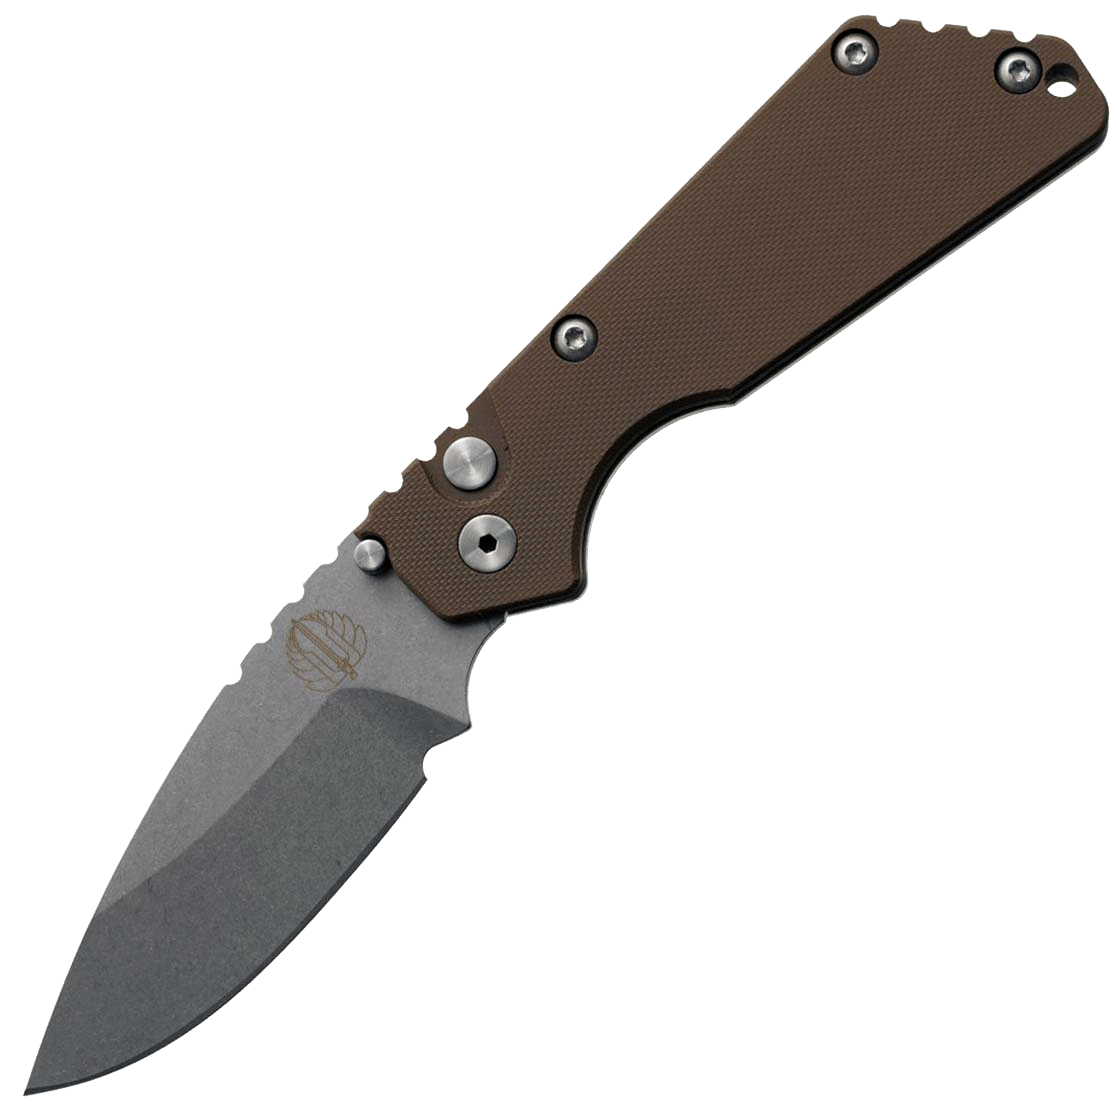 Автоматический складной нож Pro-Tech Pro-Strider SnG Auto, клинок Stonewash, сталь 154CM, рукоять сталь/коричневый G10 - фото 1